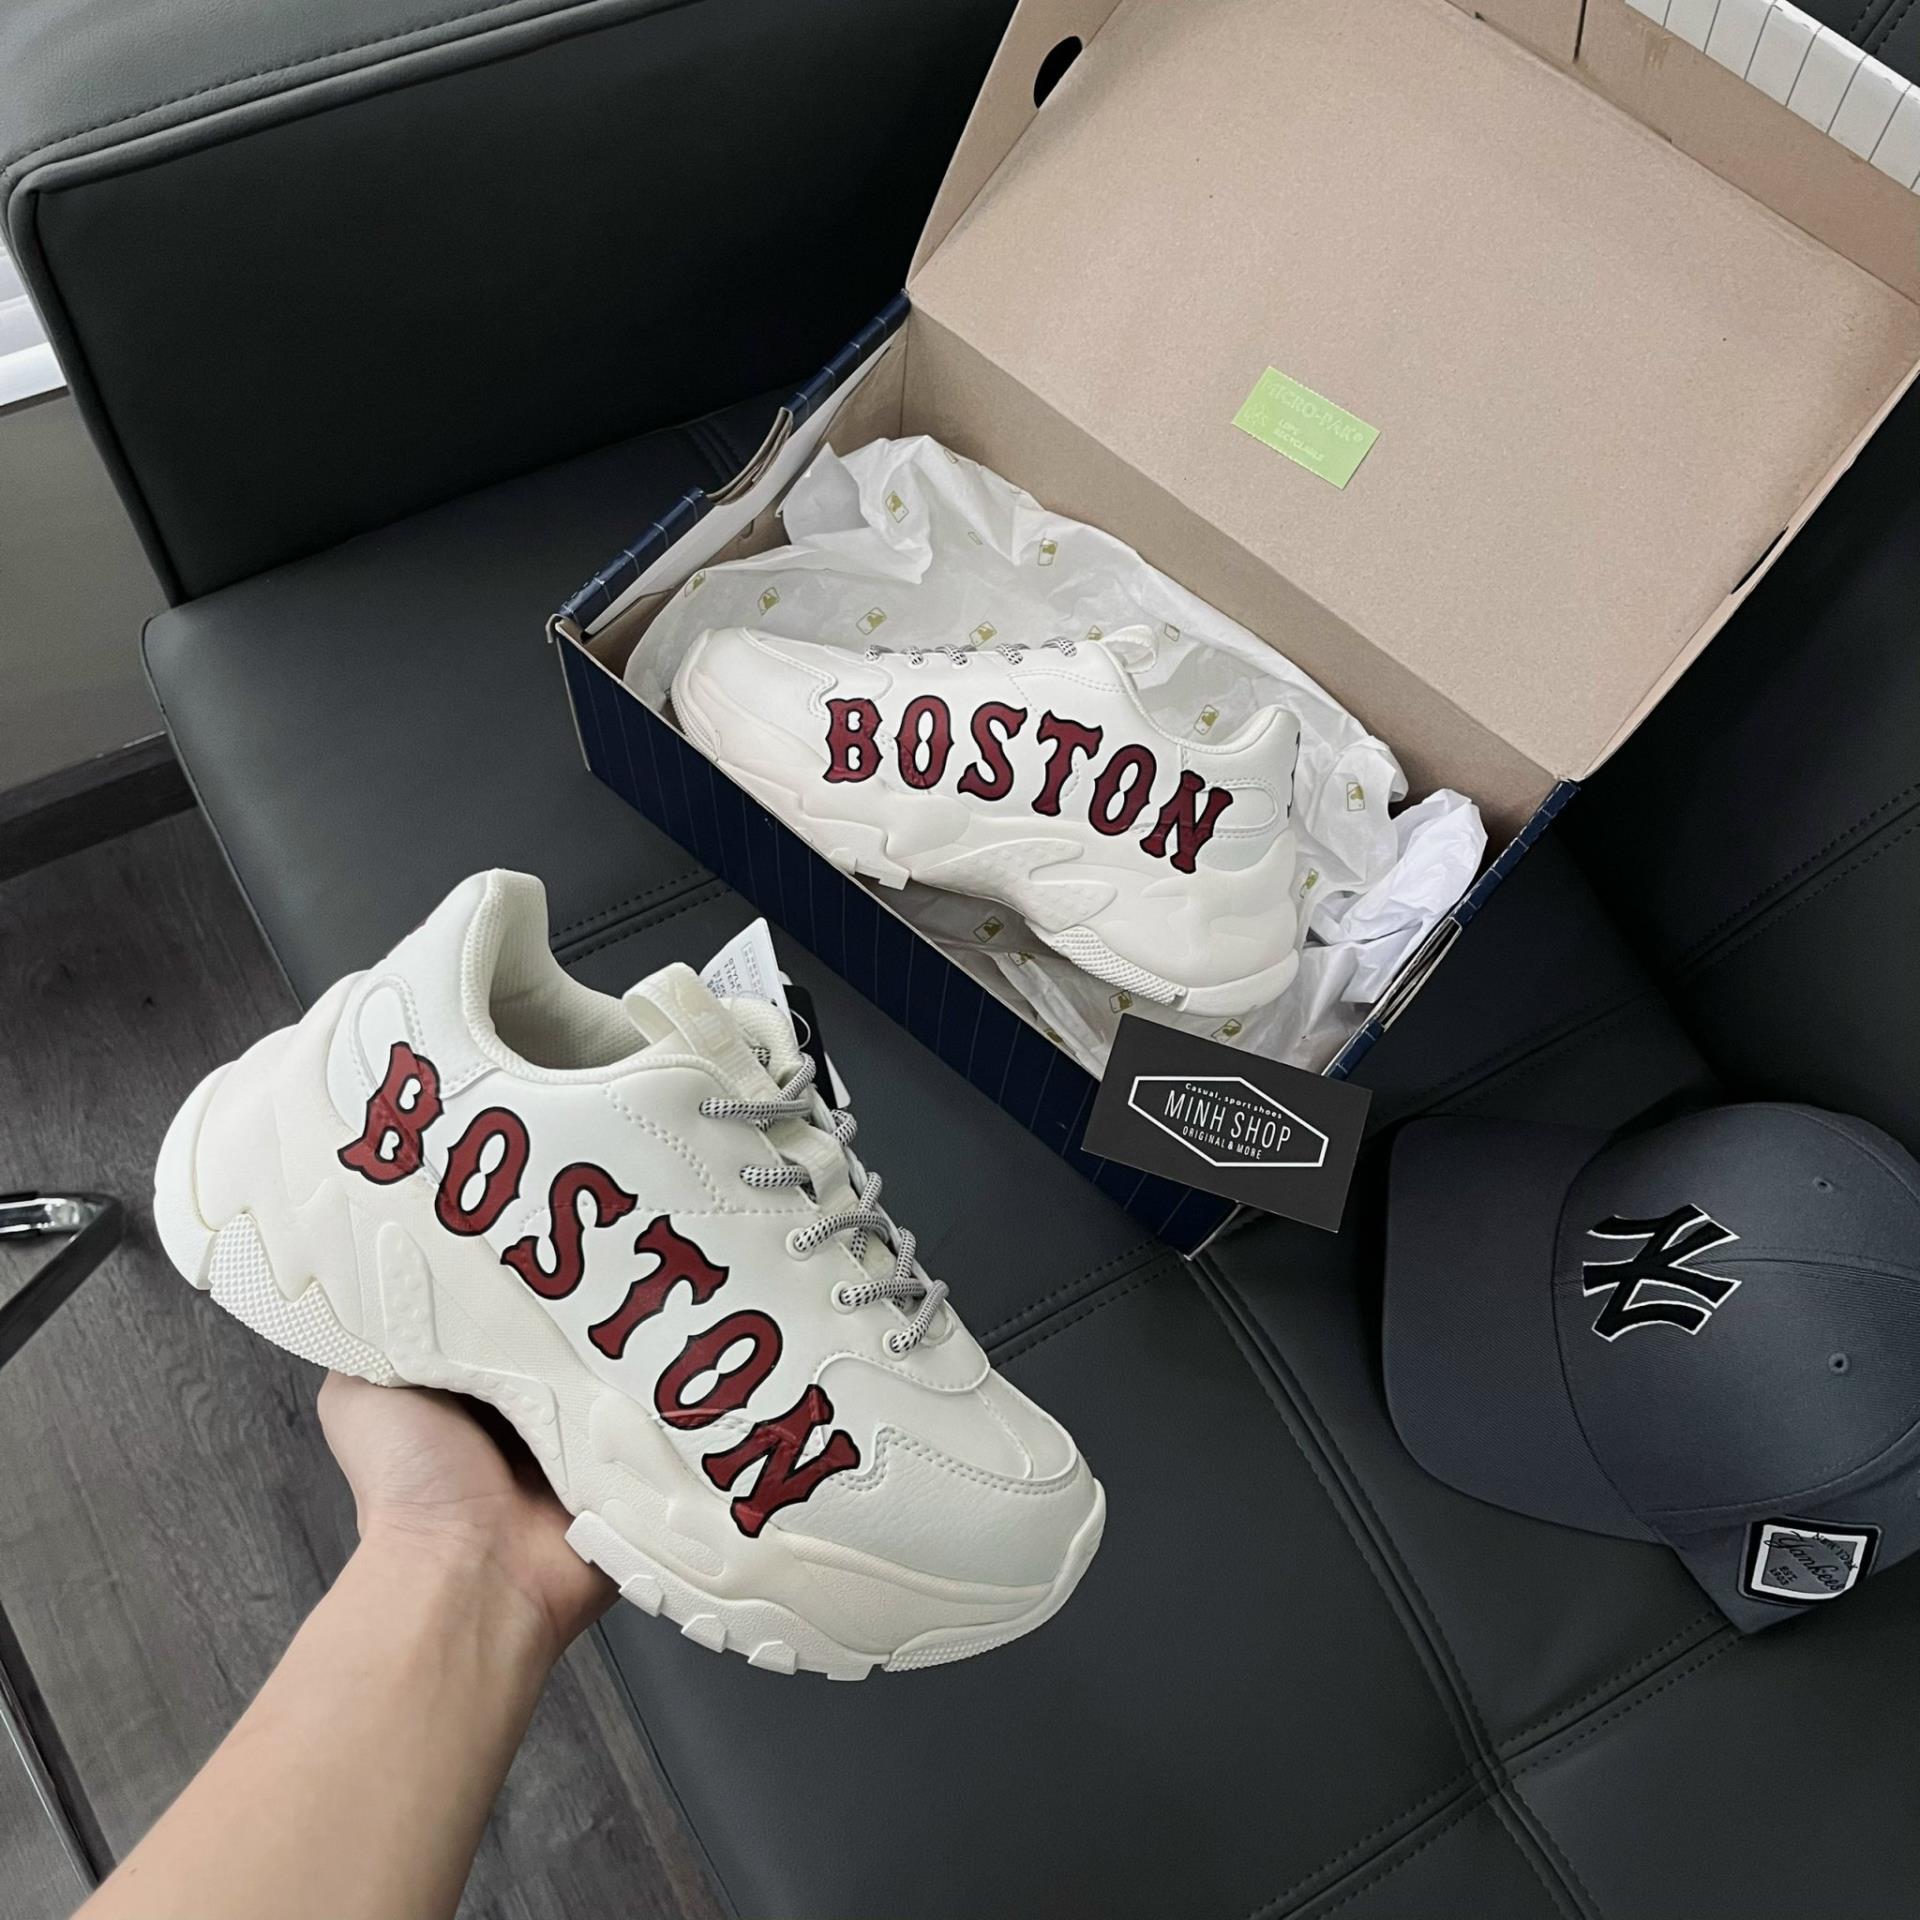 Giày MLB Boston real giá bao nhiêu Top 6 đôi giày MLB Boston chính hãng